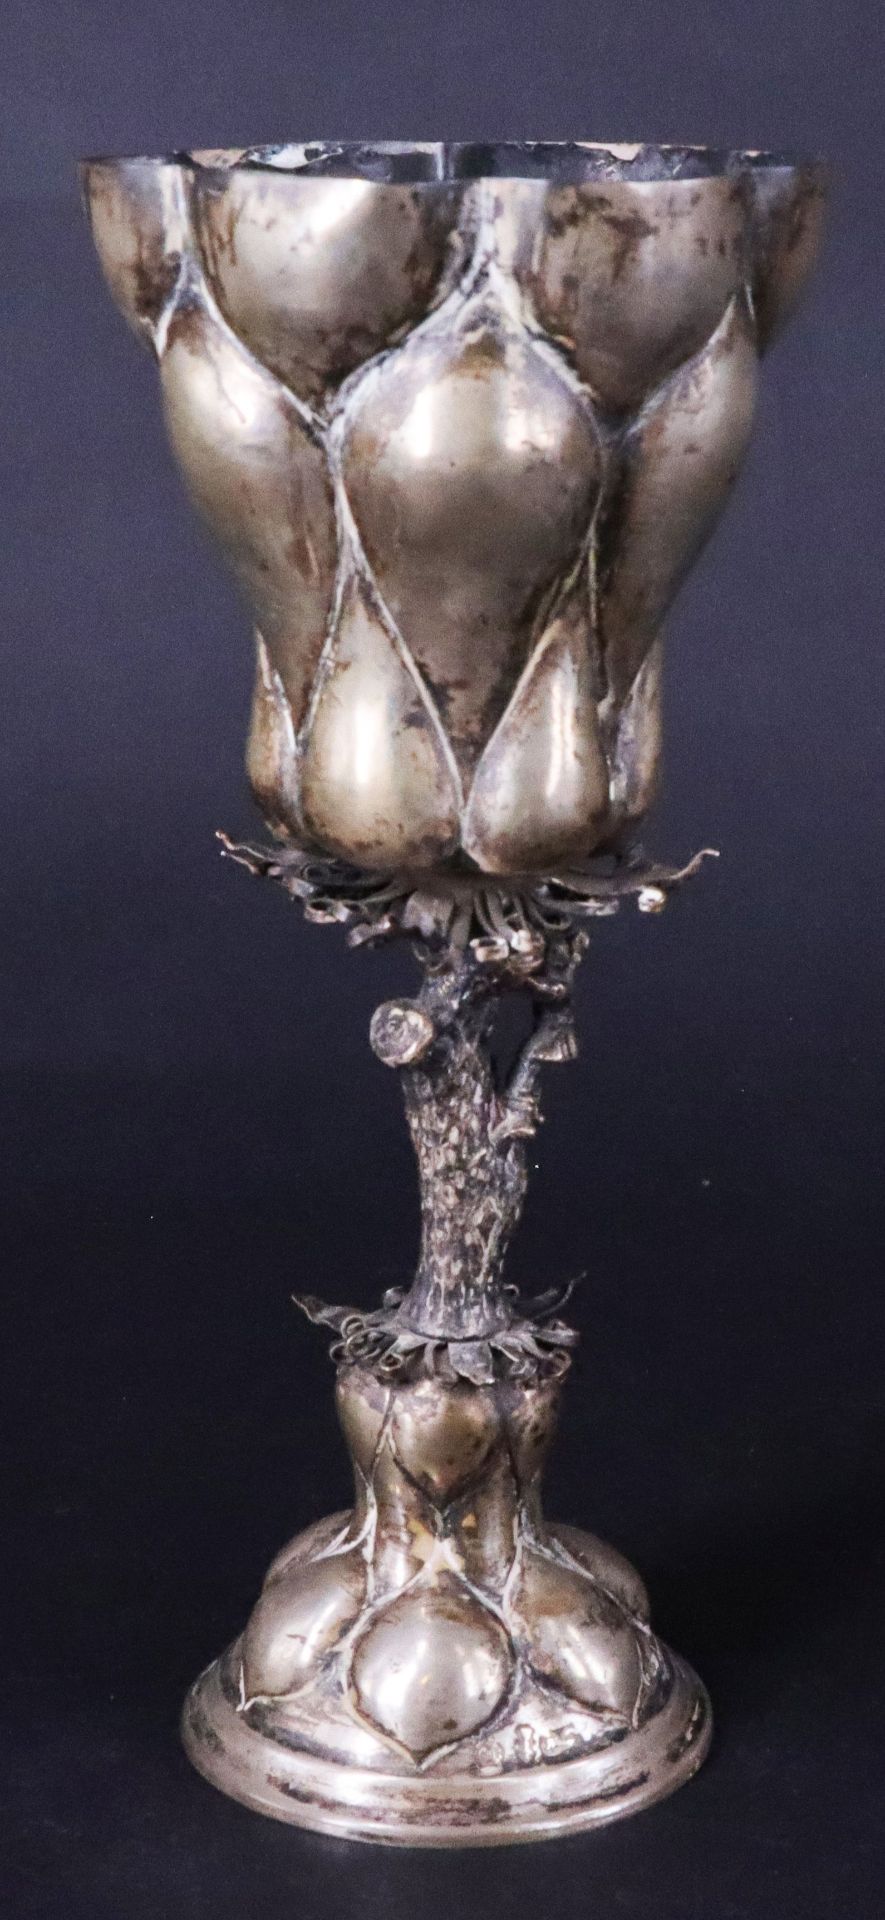 Buckelpokal, Silber, 19. Jh., sechsfach gebuckelter Fuß, schlanker Säulenschaft als Baumstamm mit